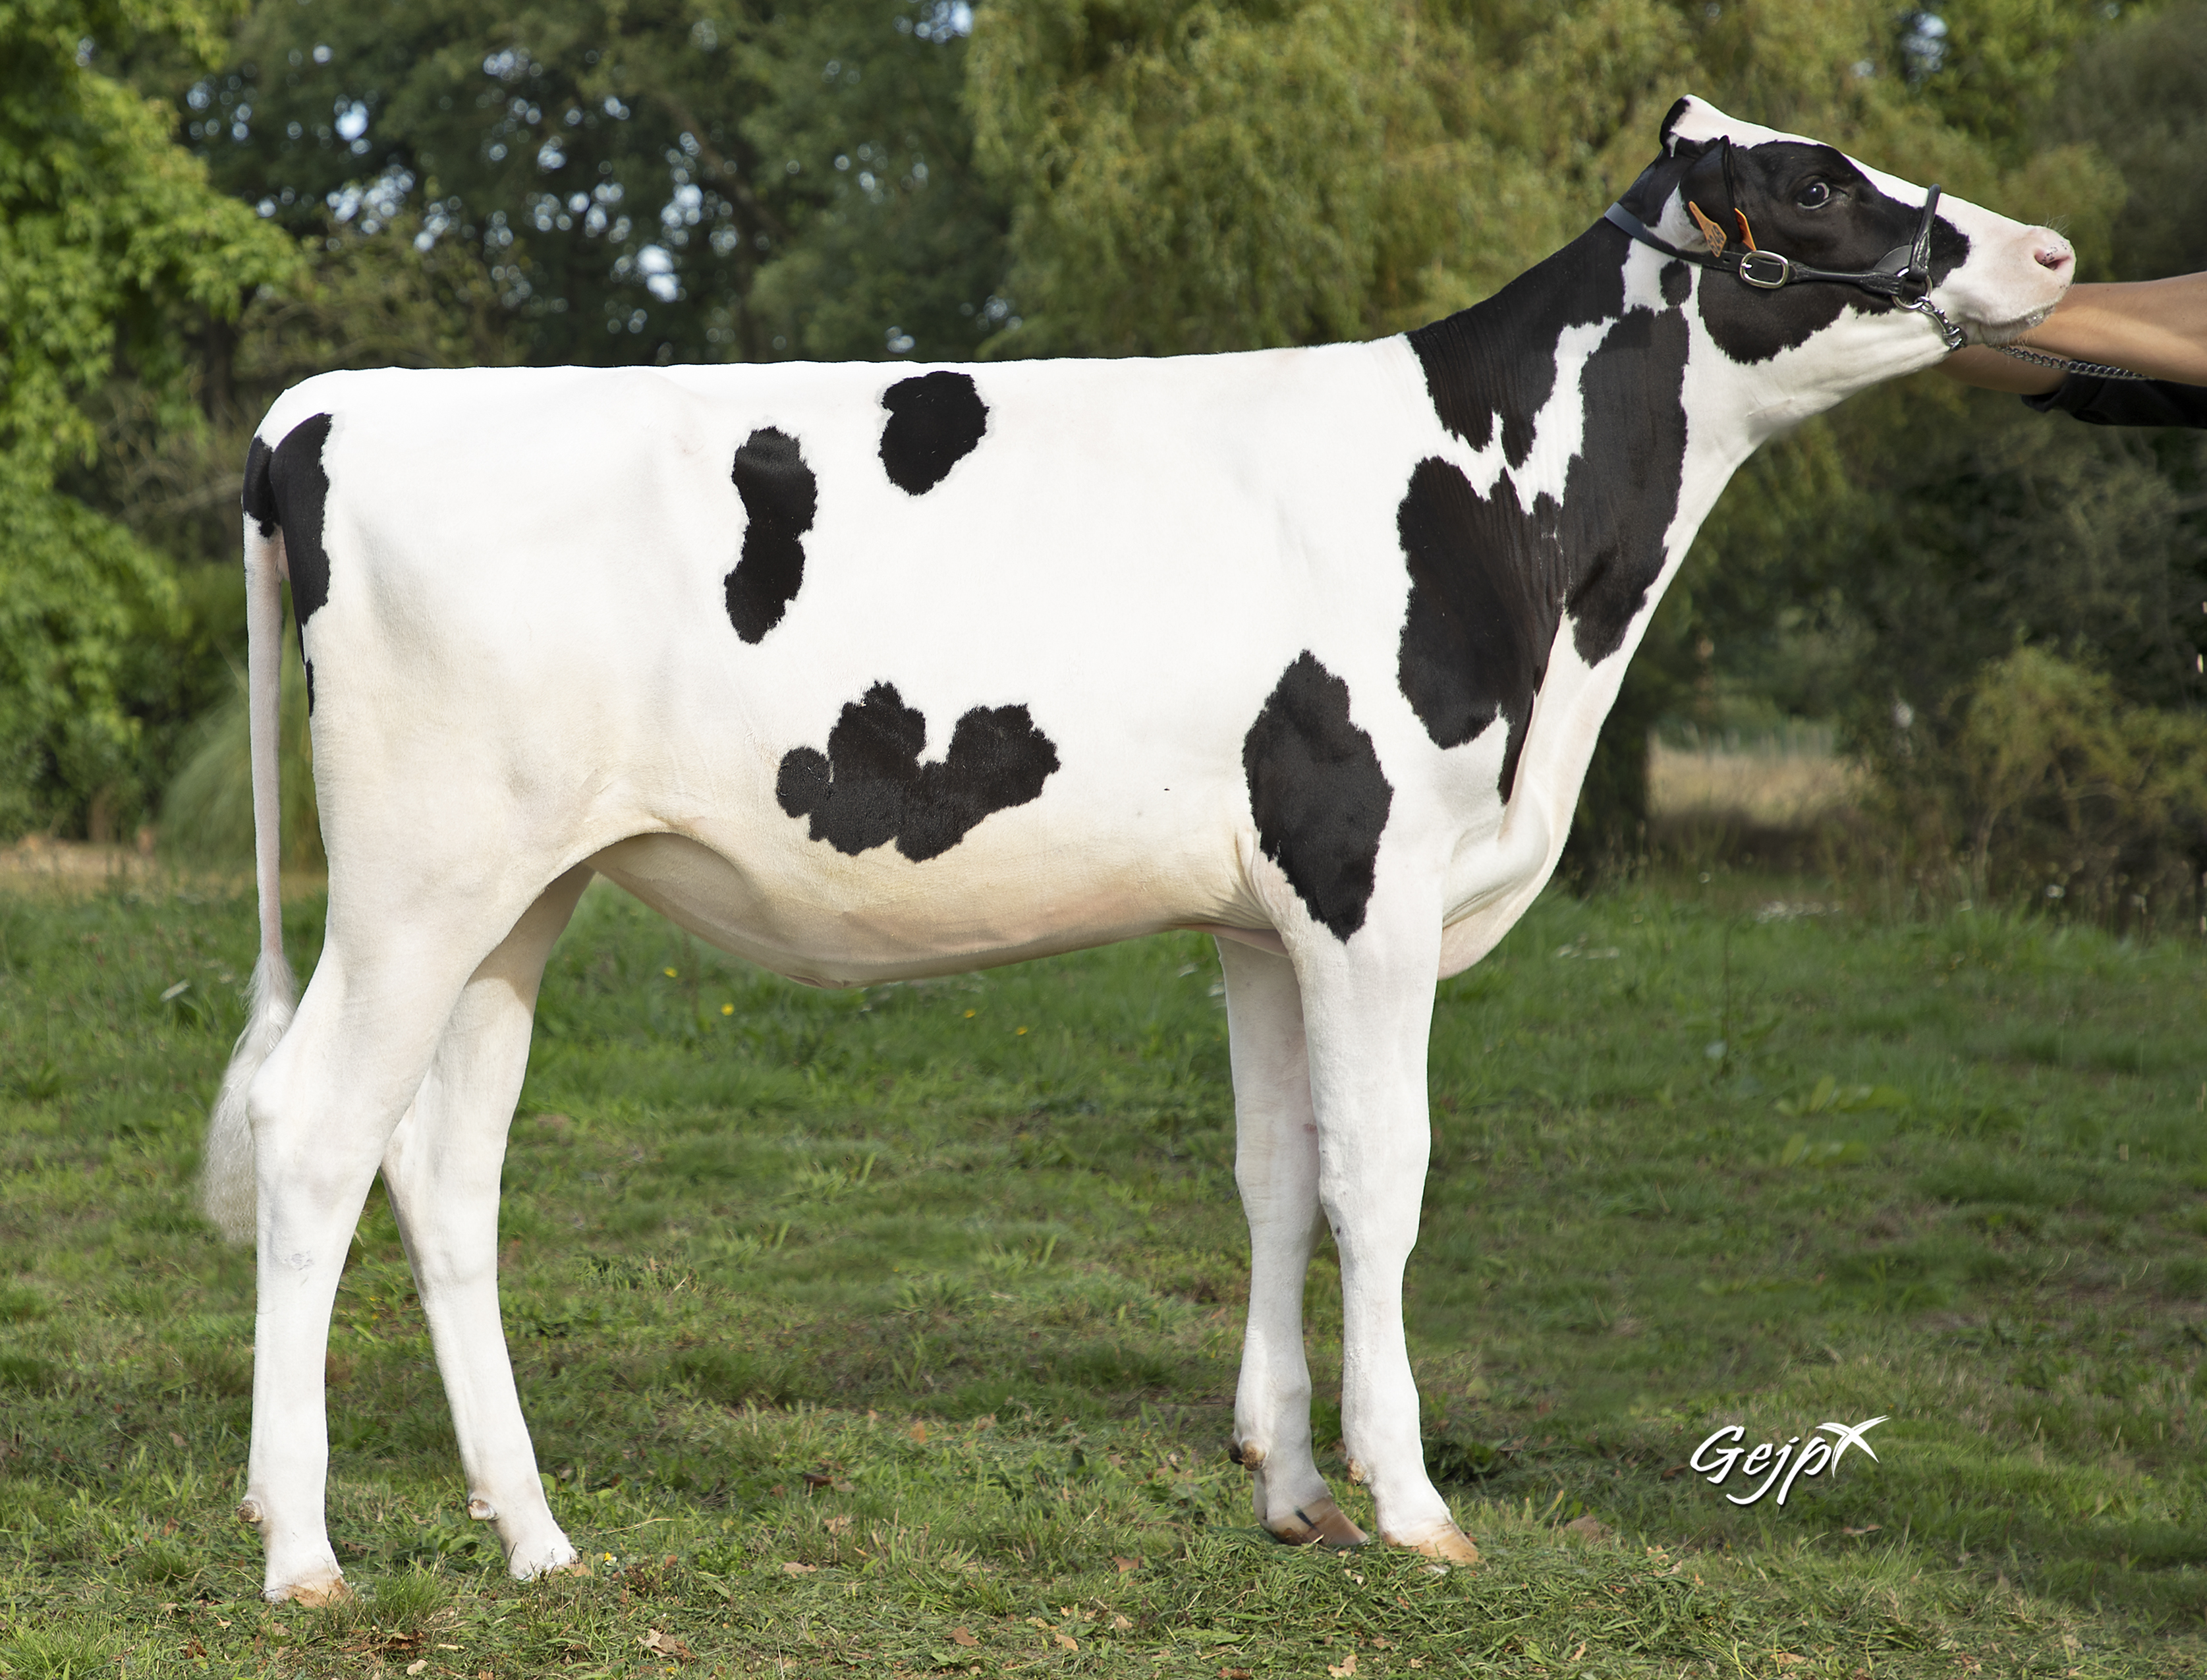 Éleveur de vaches Holstein pour vente d'embryons